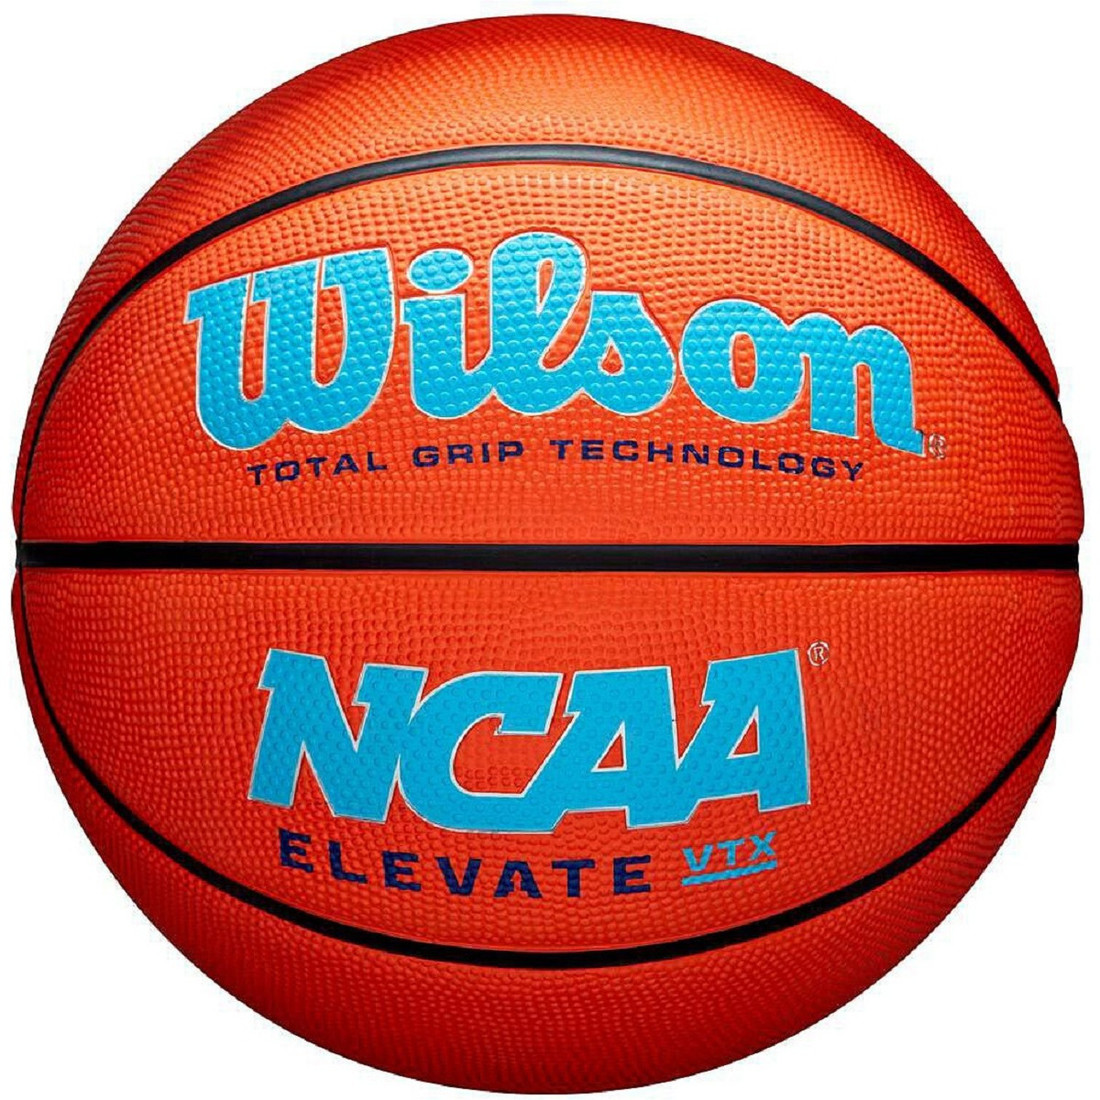 Basketbalový míč WILSON, velikost 7